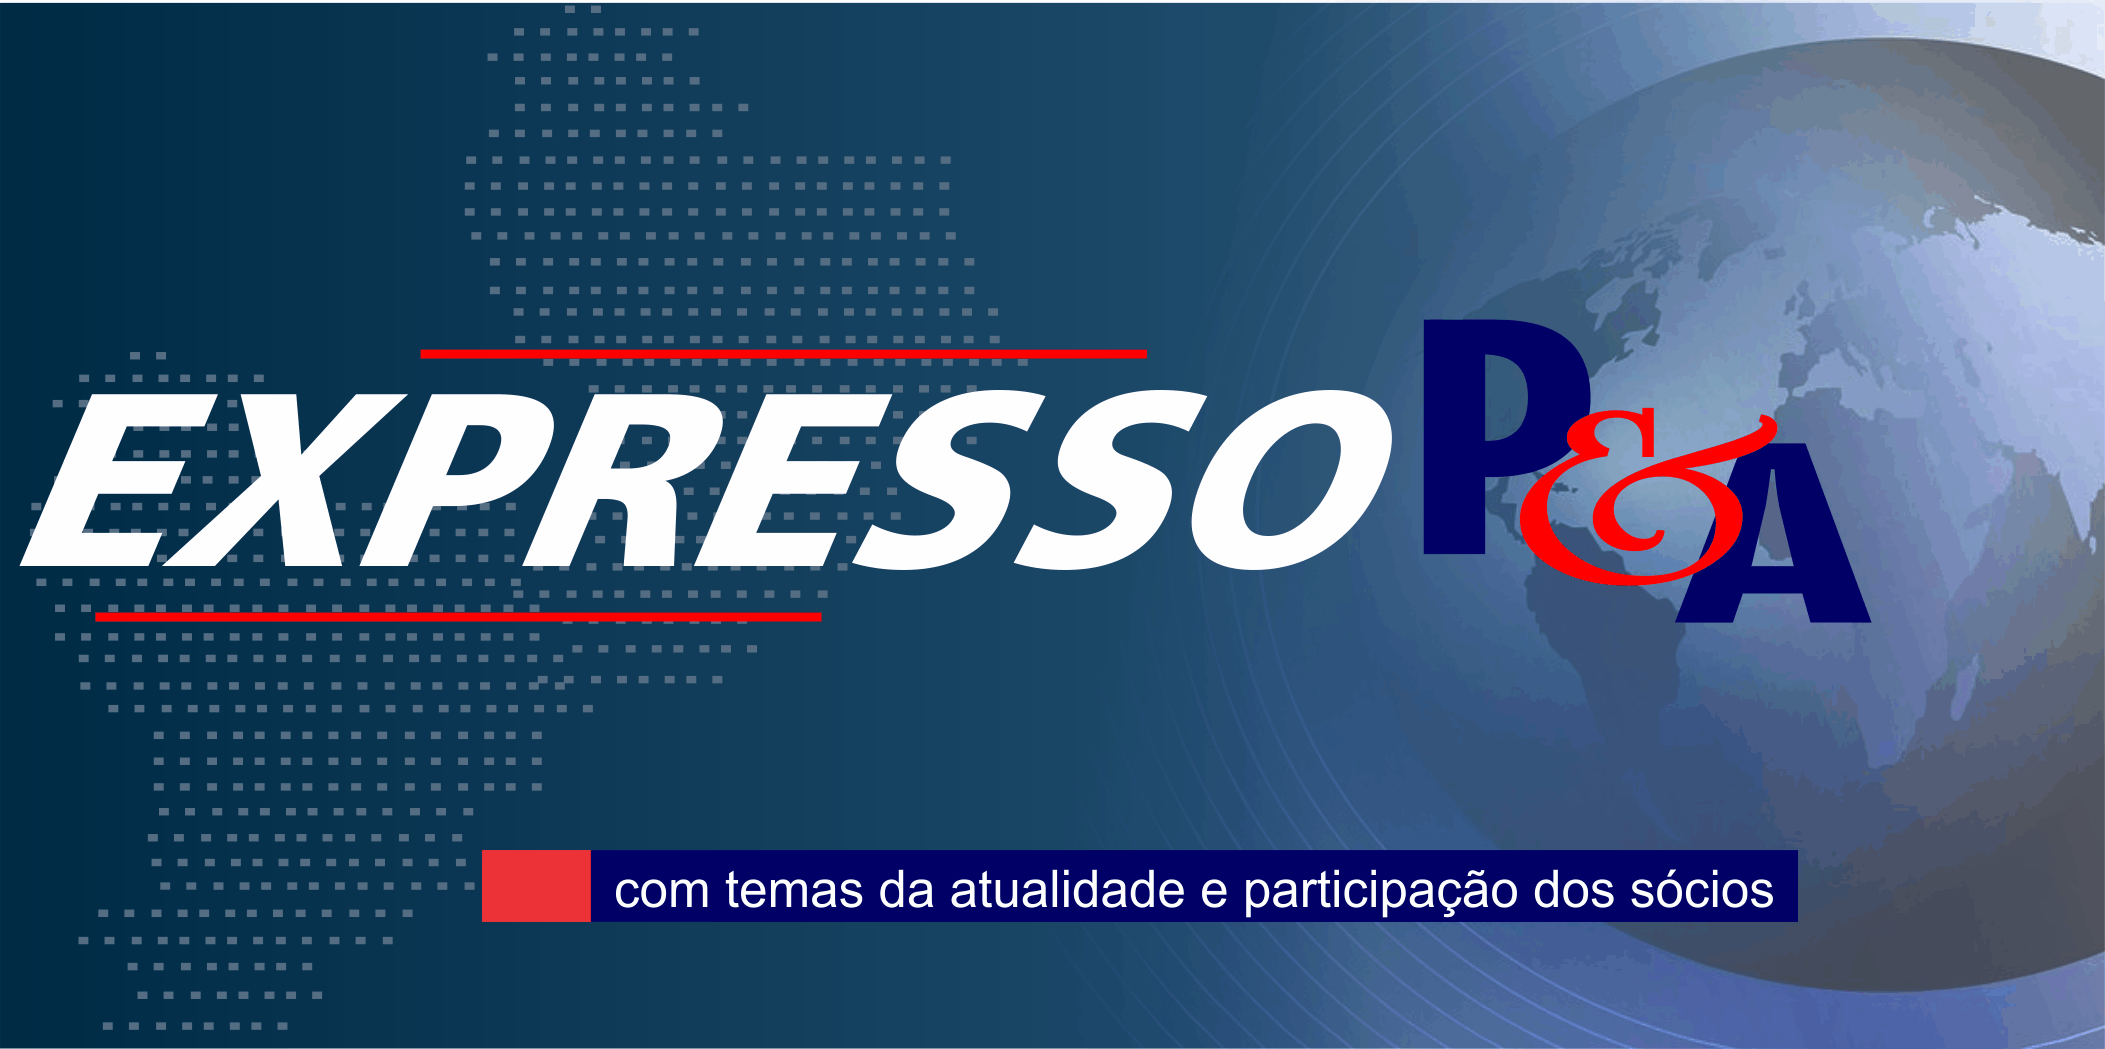 EXPRESSO P&A TELECOMUNICAÇÕES